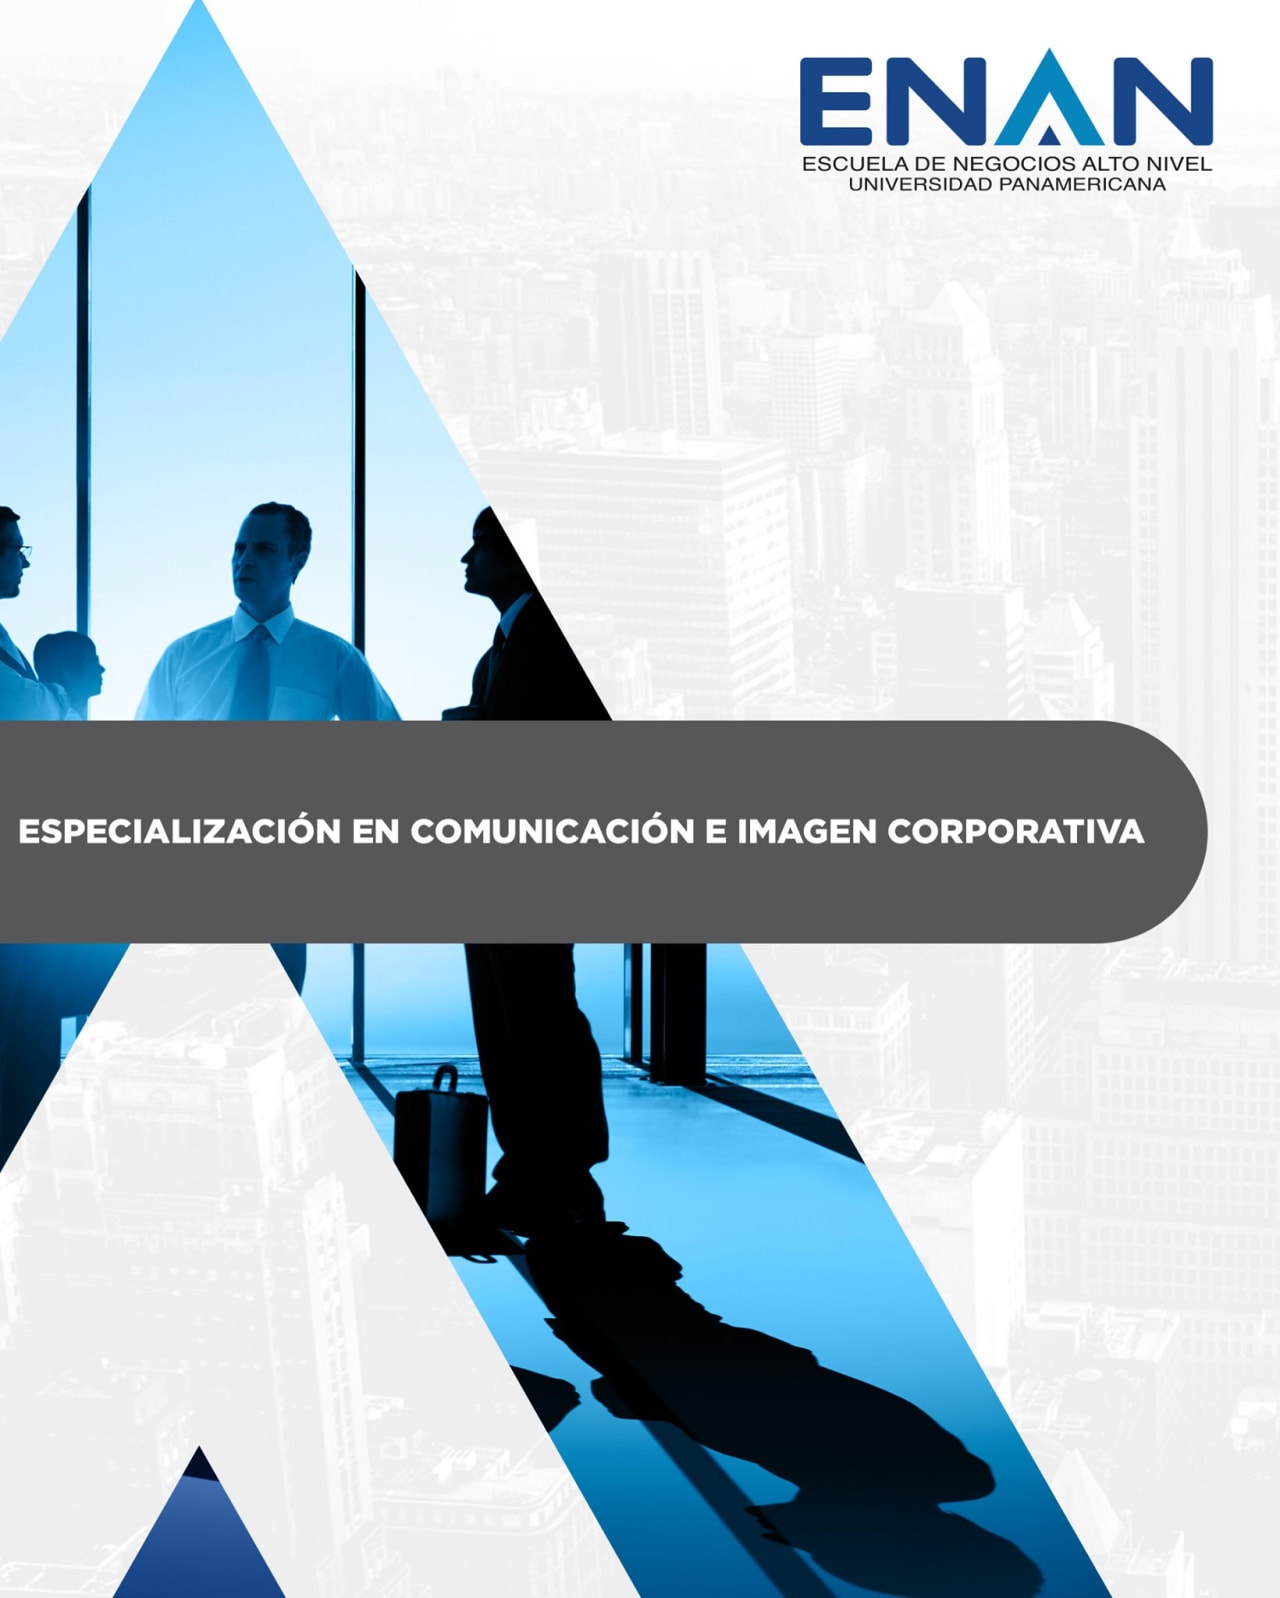 Escuela de Negocios Alto Nivel - Universidad Panamericana de Guatemala Spezialisierung auf Kommunikation und Unternehmensimage